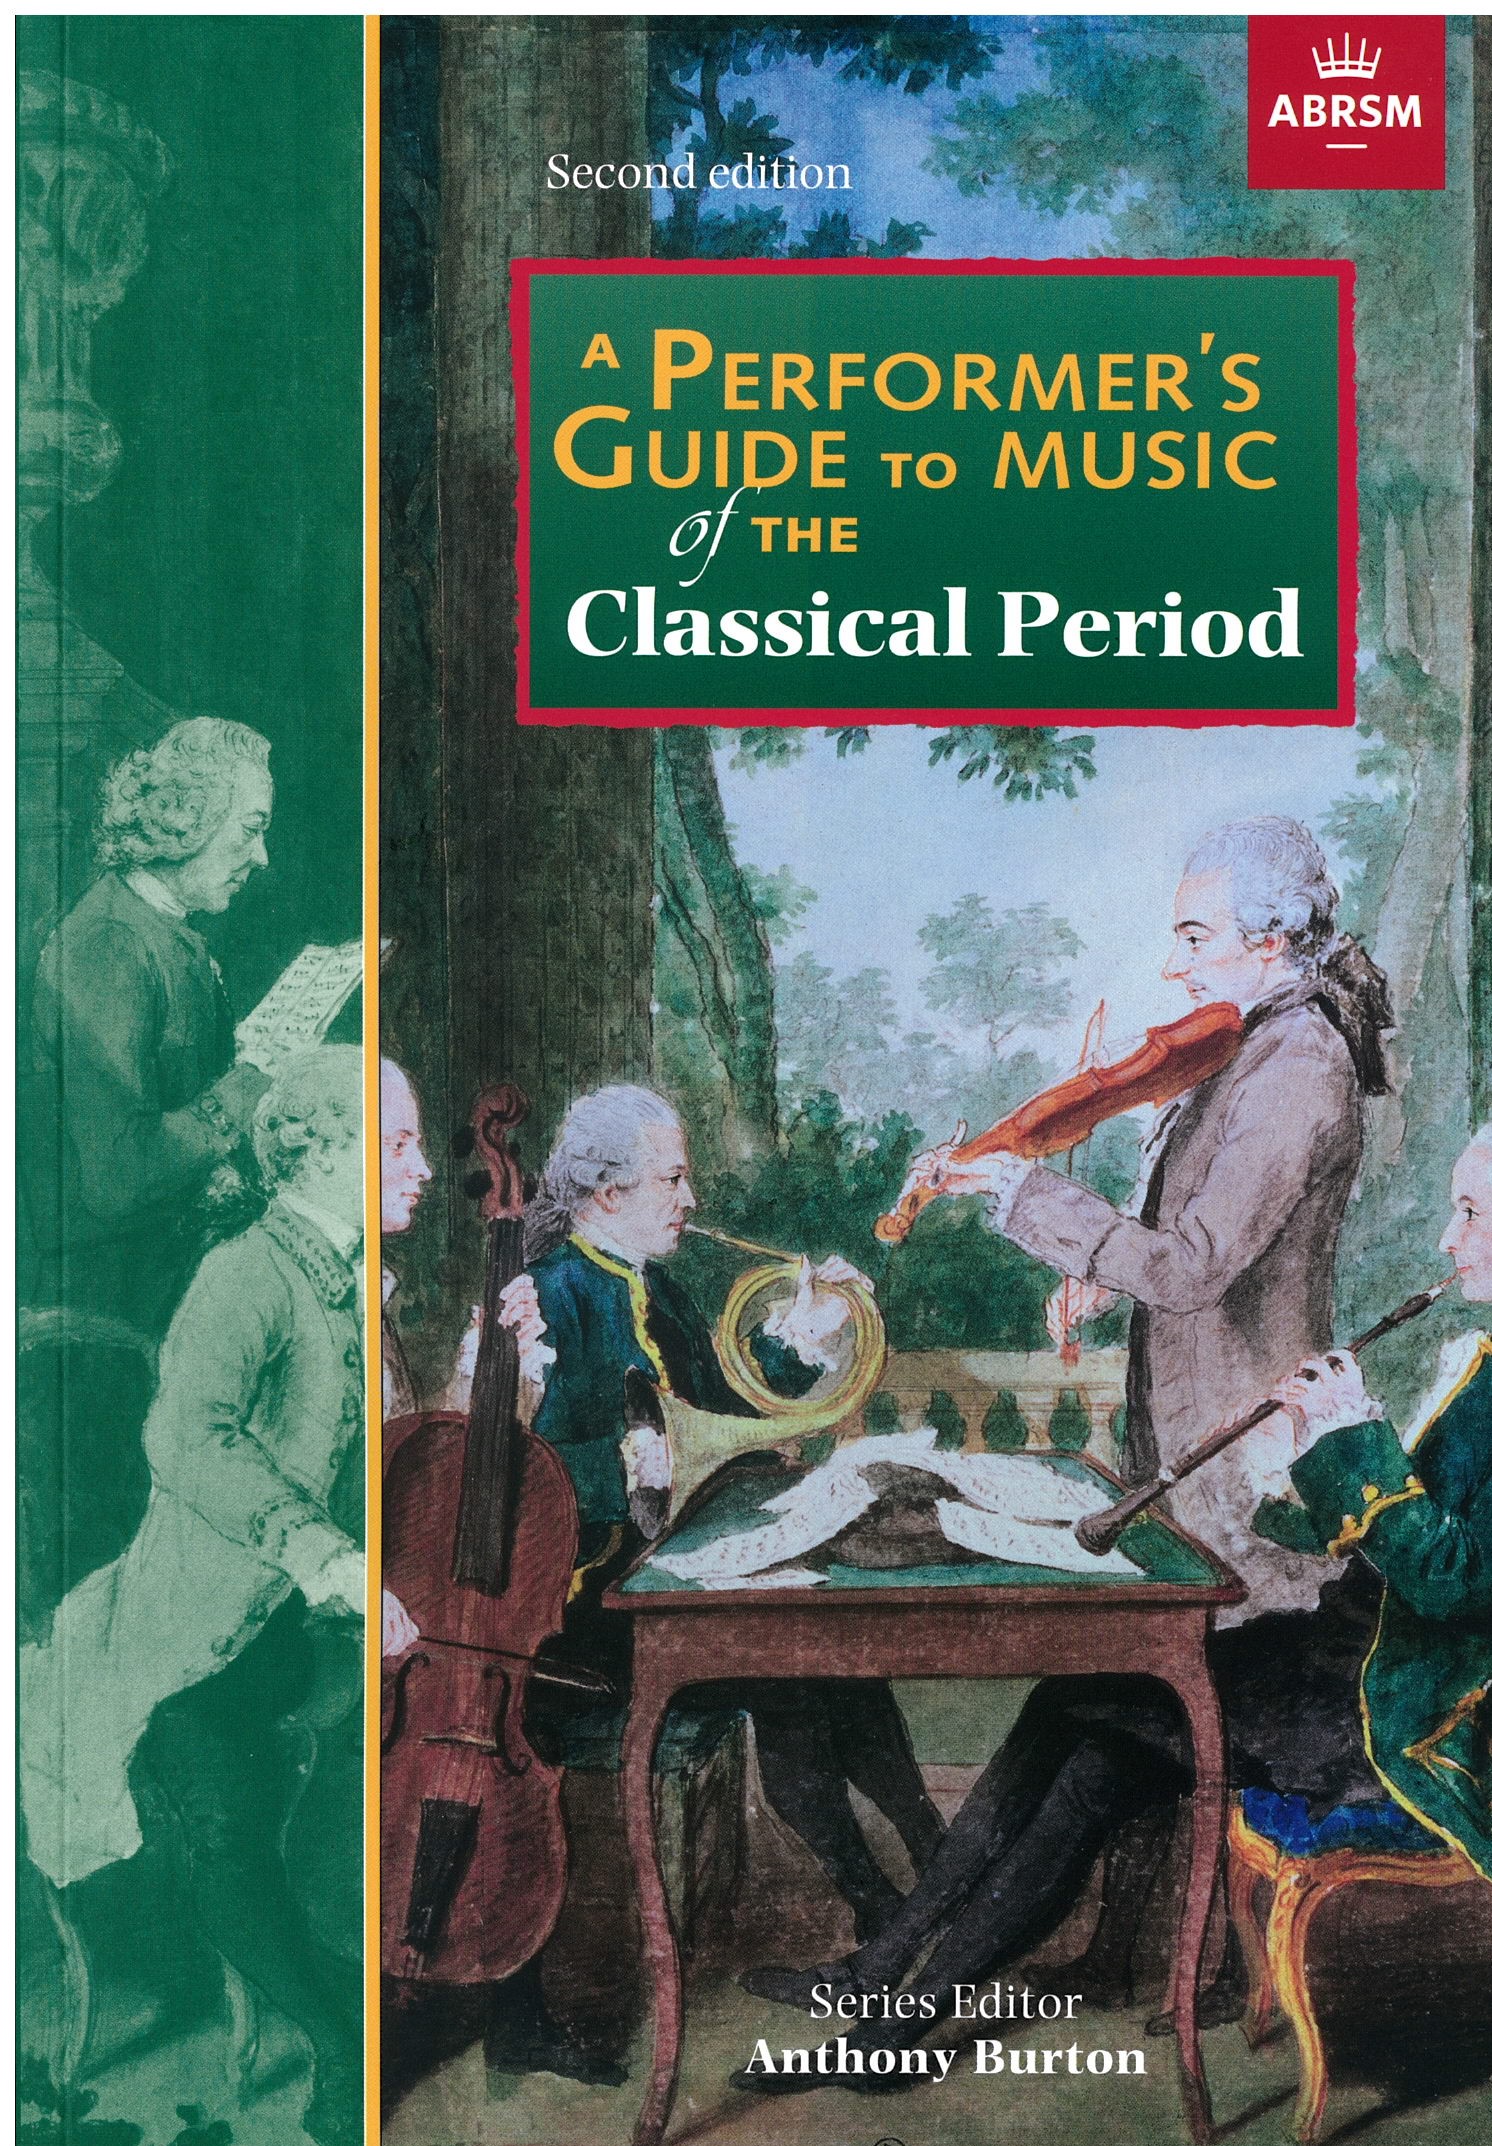 연주자를 위한 가이드: 고전시대(2판, CD 없음)_A Performer's Guide to Music of the Classical Period (Second edition) without CD